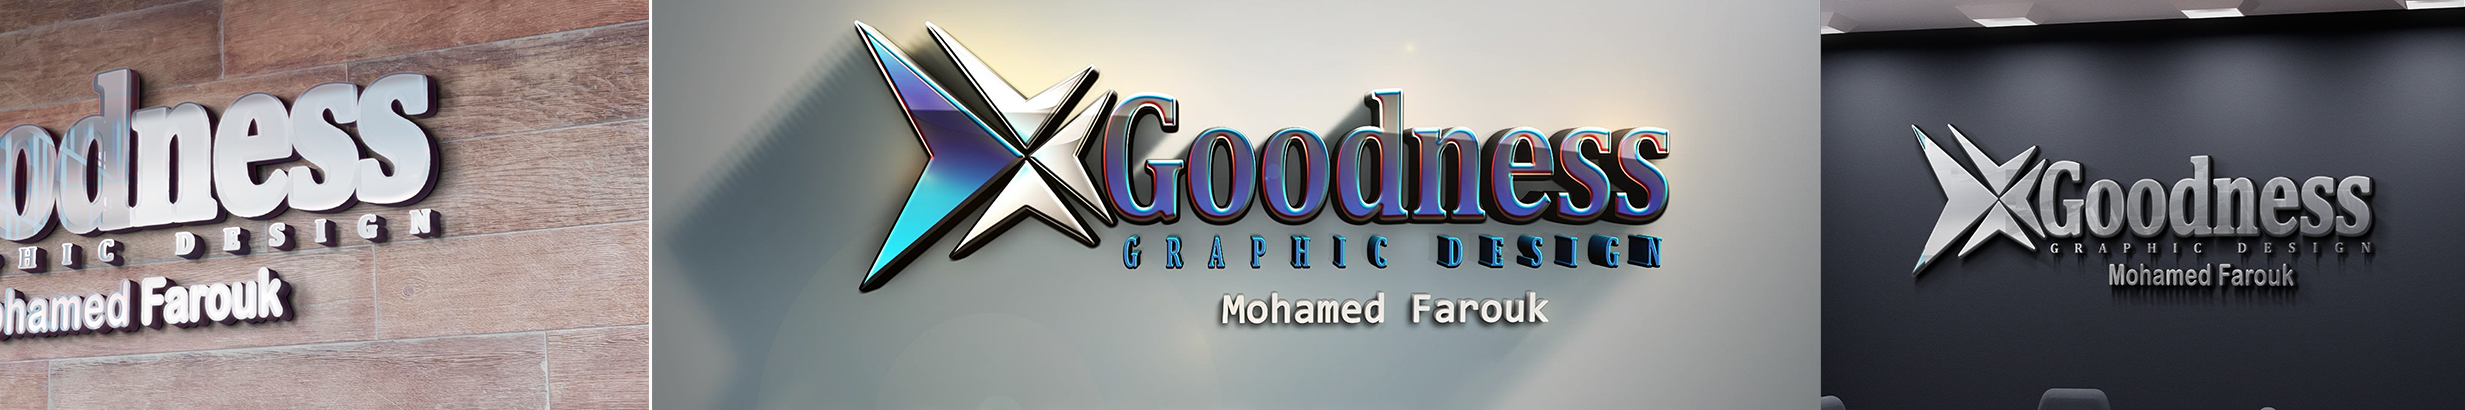 Mohamed Farouk's profile banner